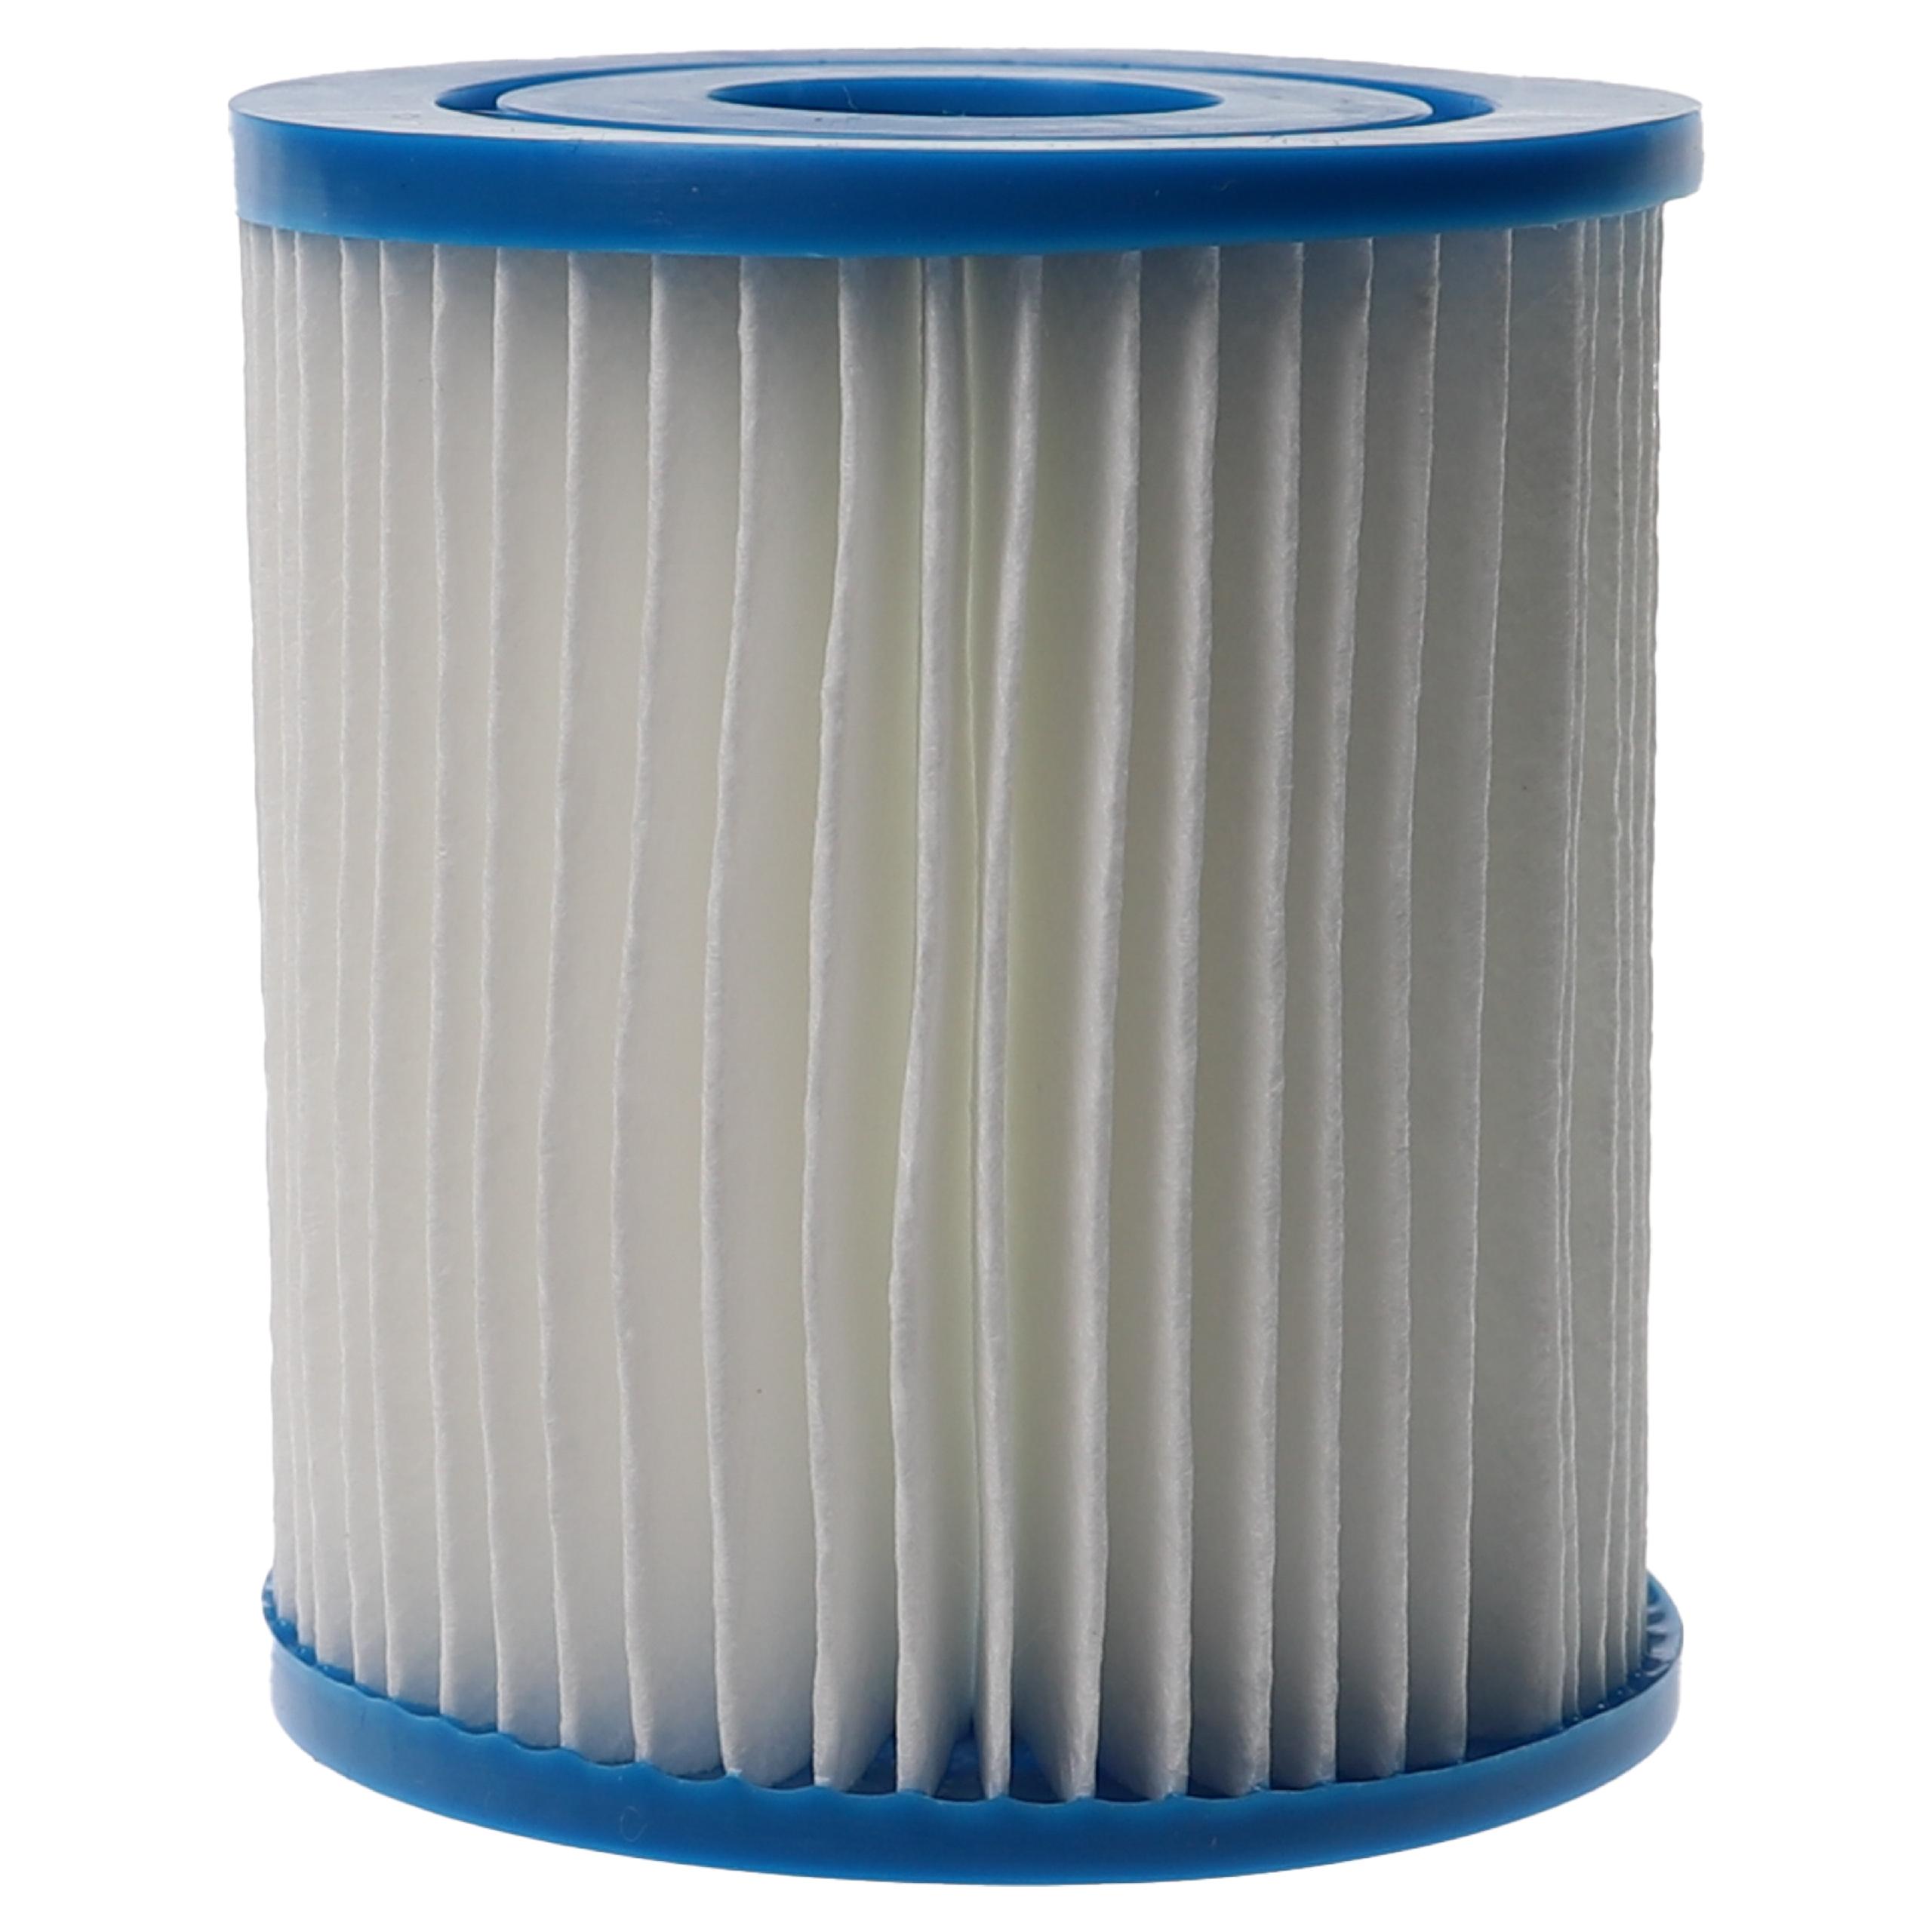 3x Wasserfilter als Ersatz für APC C7490 für Intex Swimmingpool & Filterpumpe u.a. - Filterkartusche